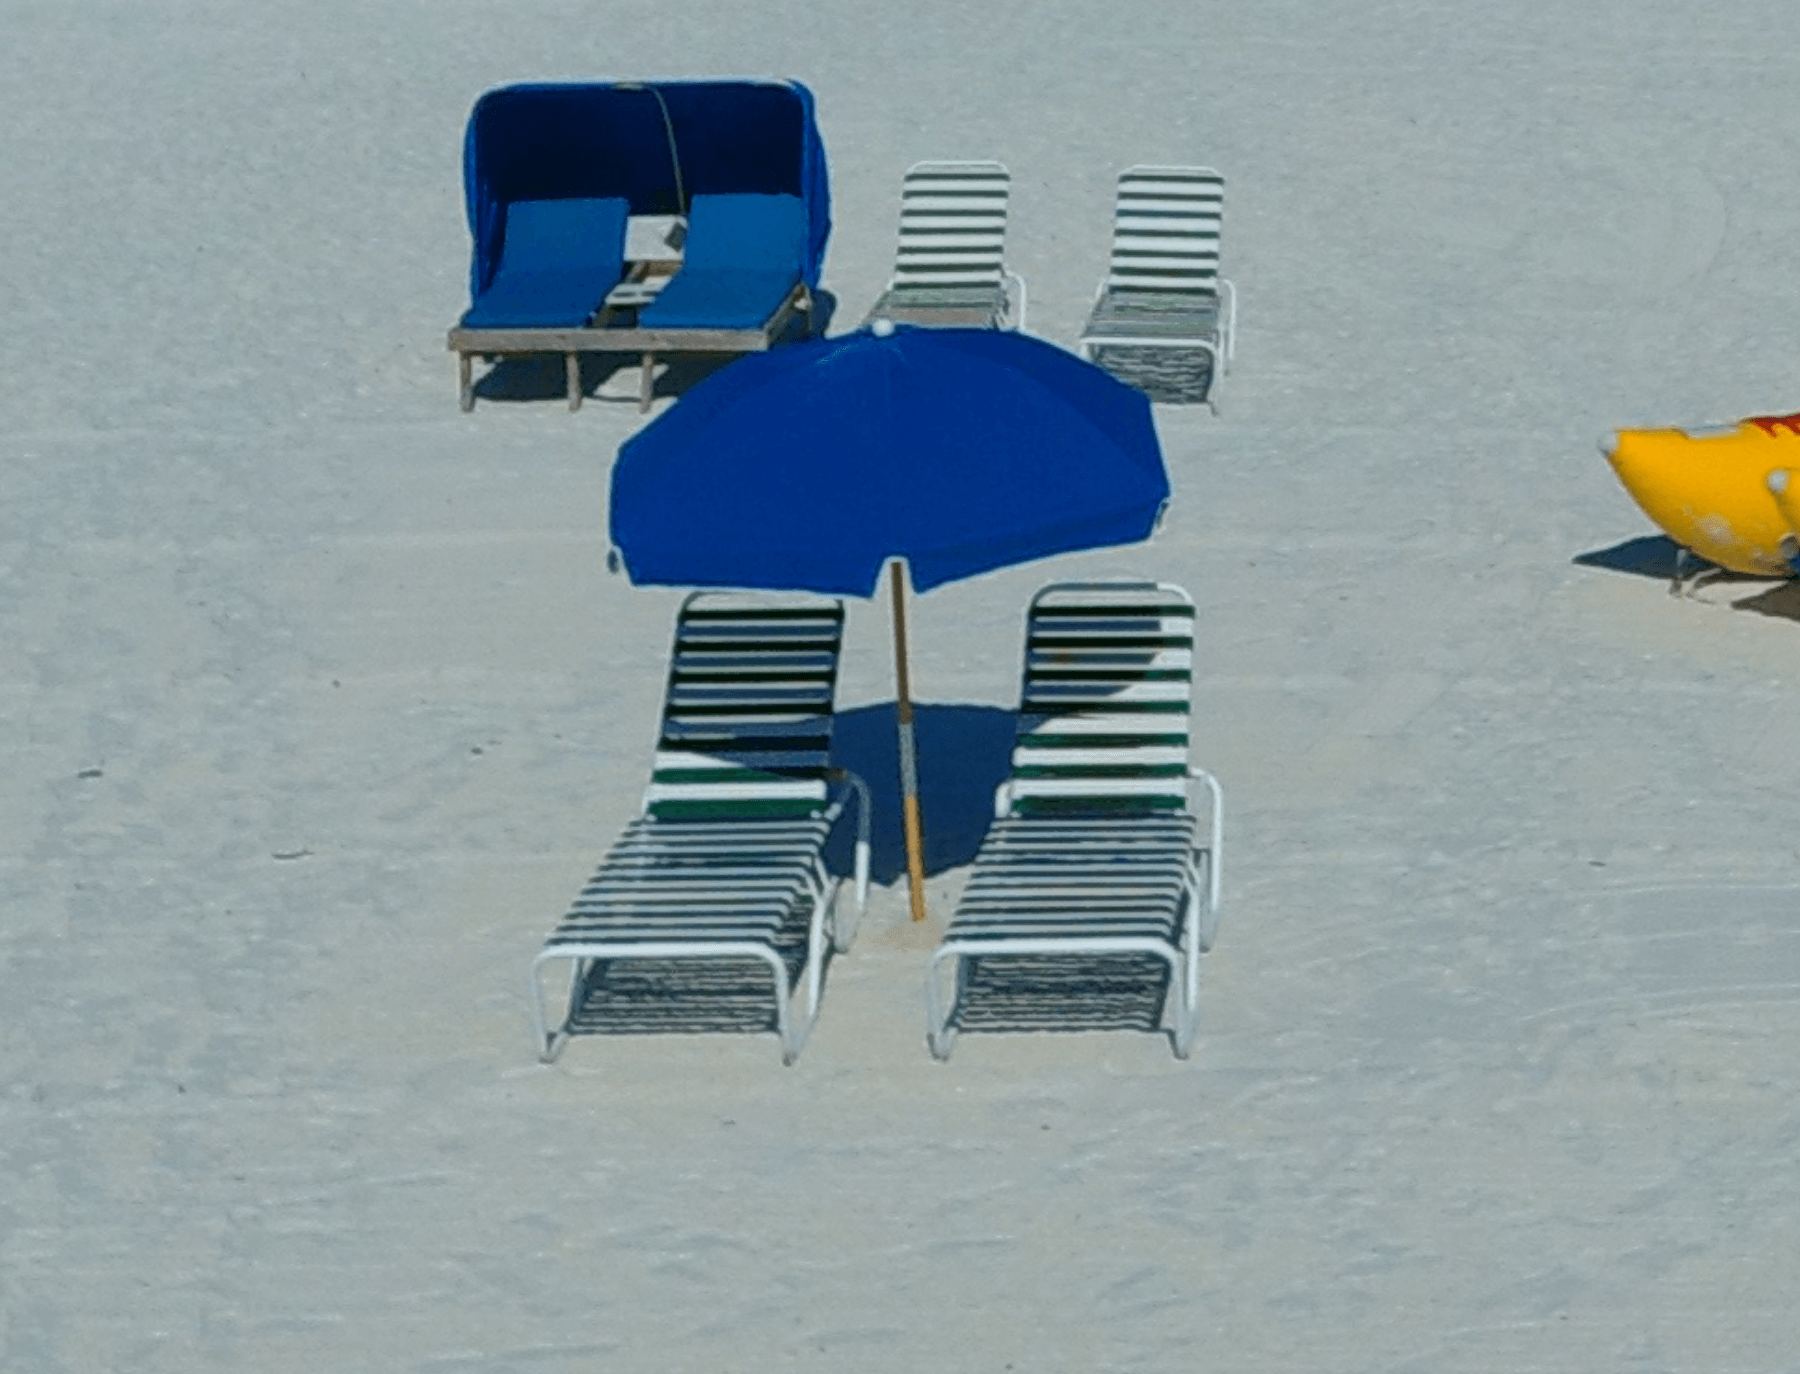 Blue beach chair on the beach shore